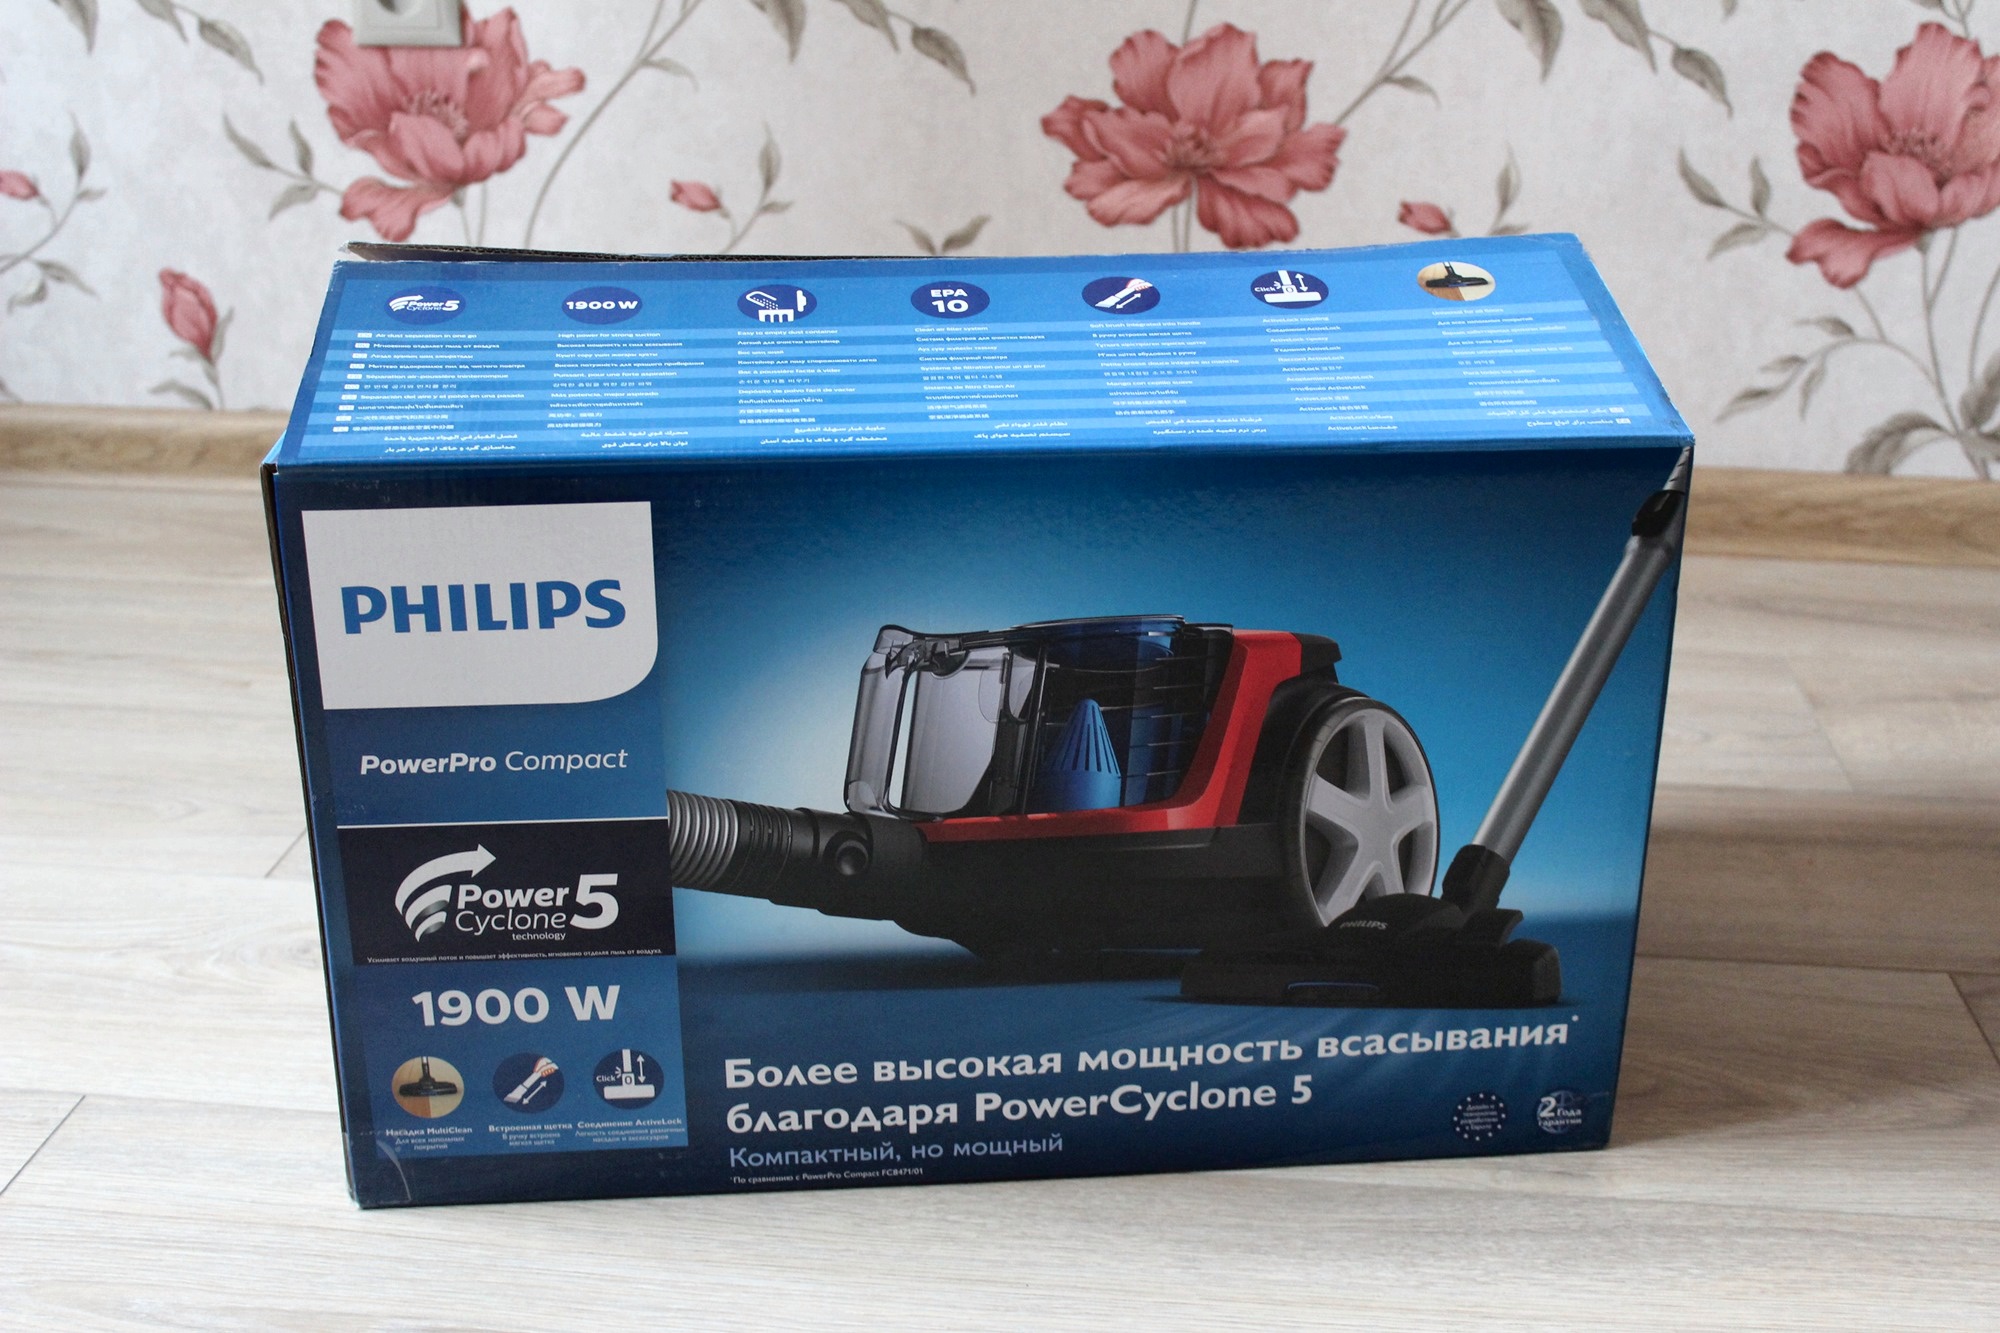 Филипс фс. Philips FC 9351. Philips fc9351 POWERPRO Compact. Филипс Cyclone 5 модель. Пылесос Philips Power Pro Compact 9351.